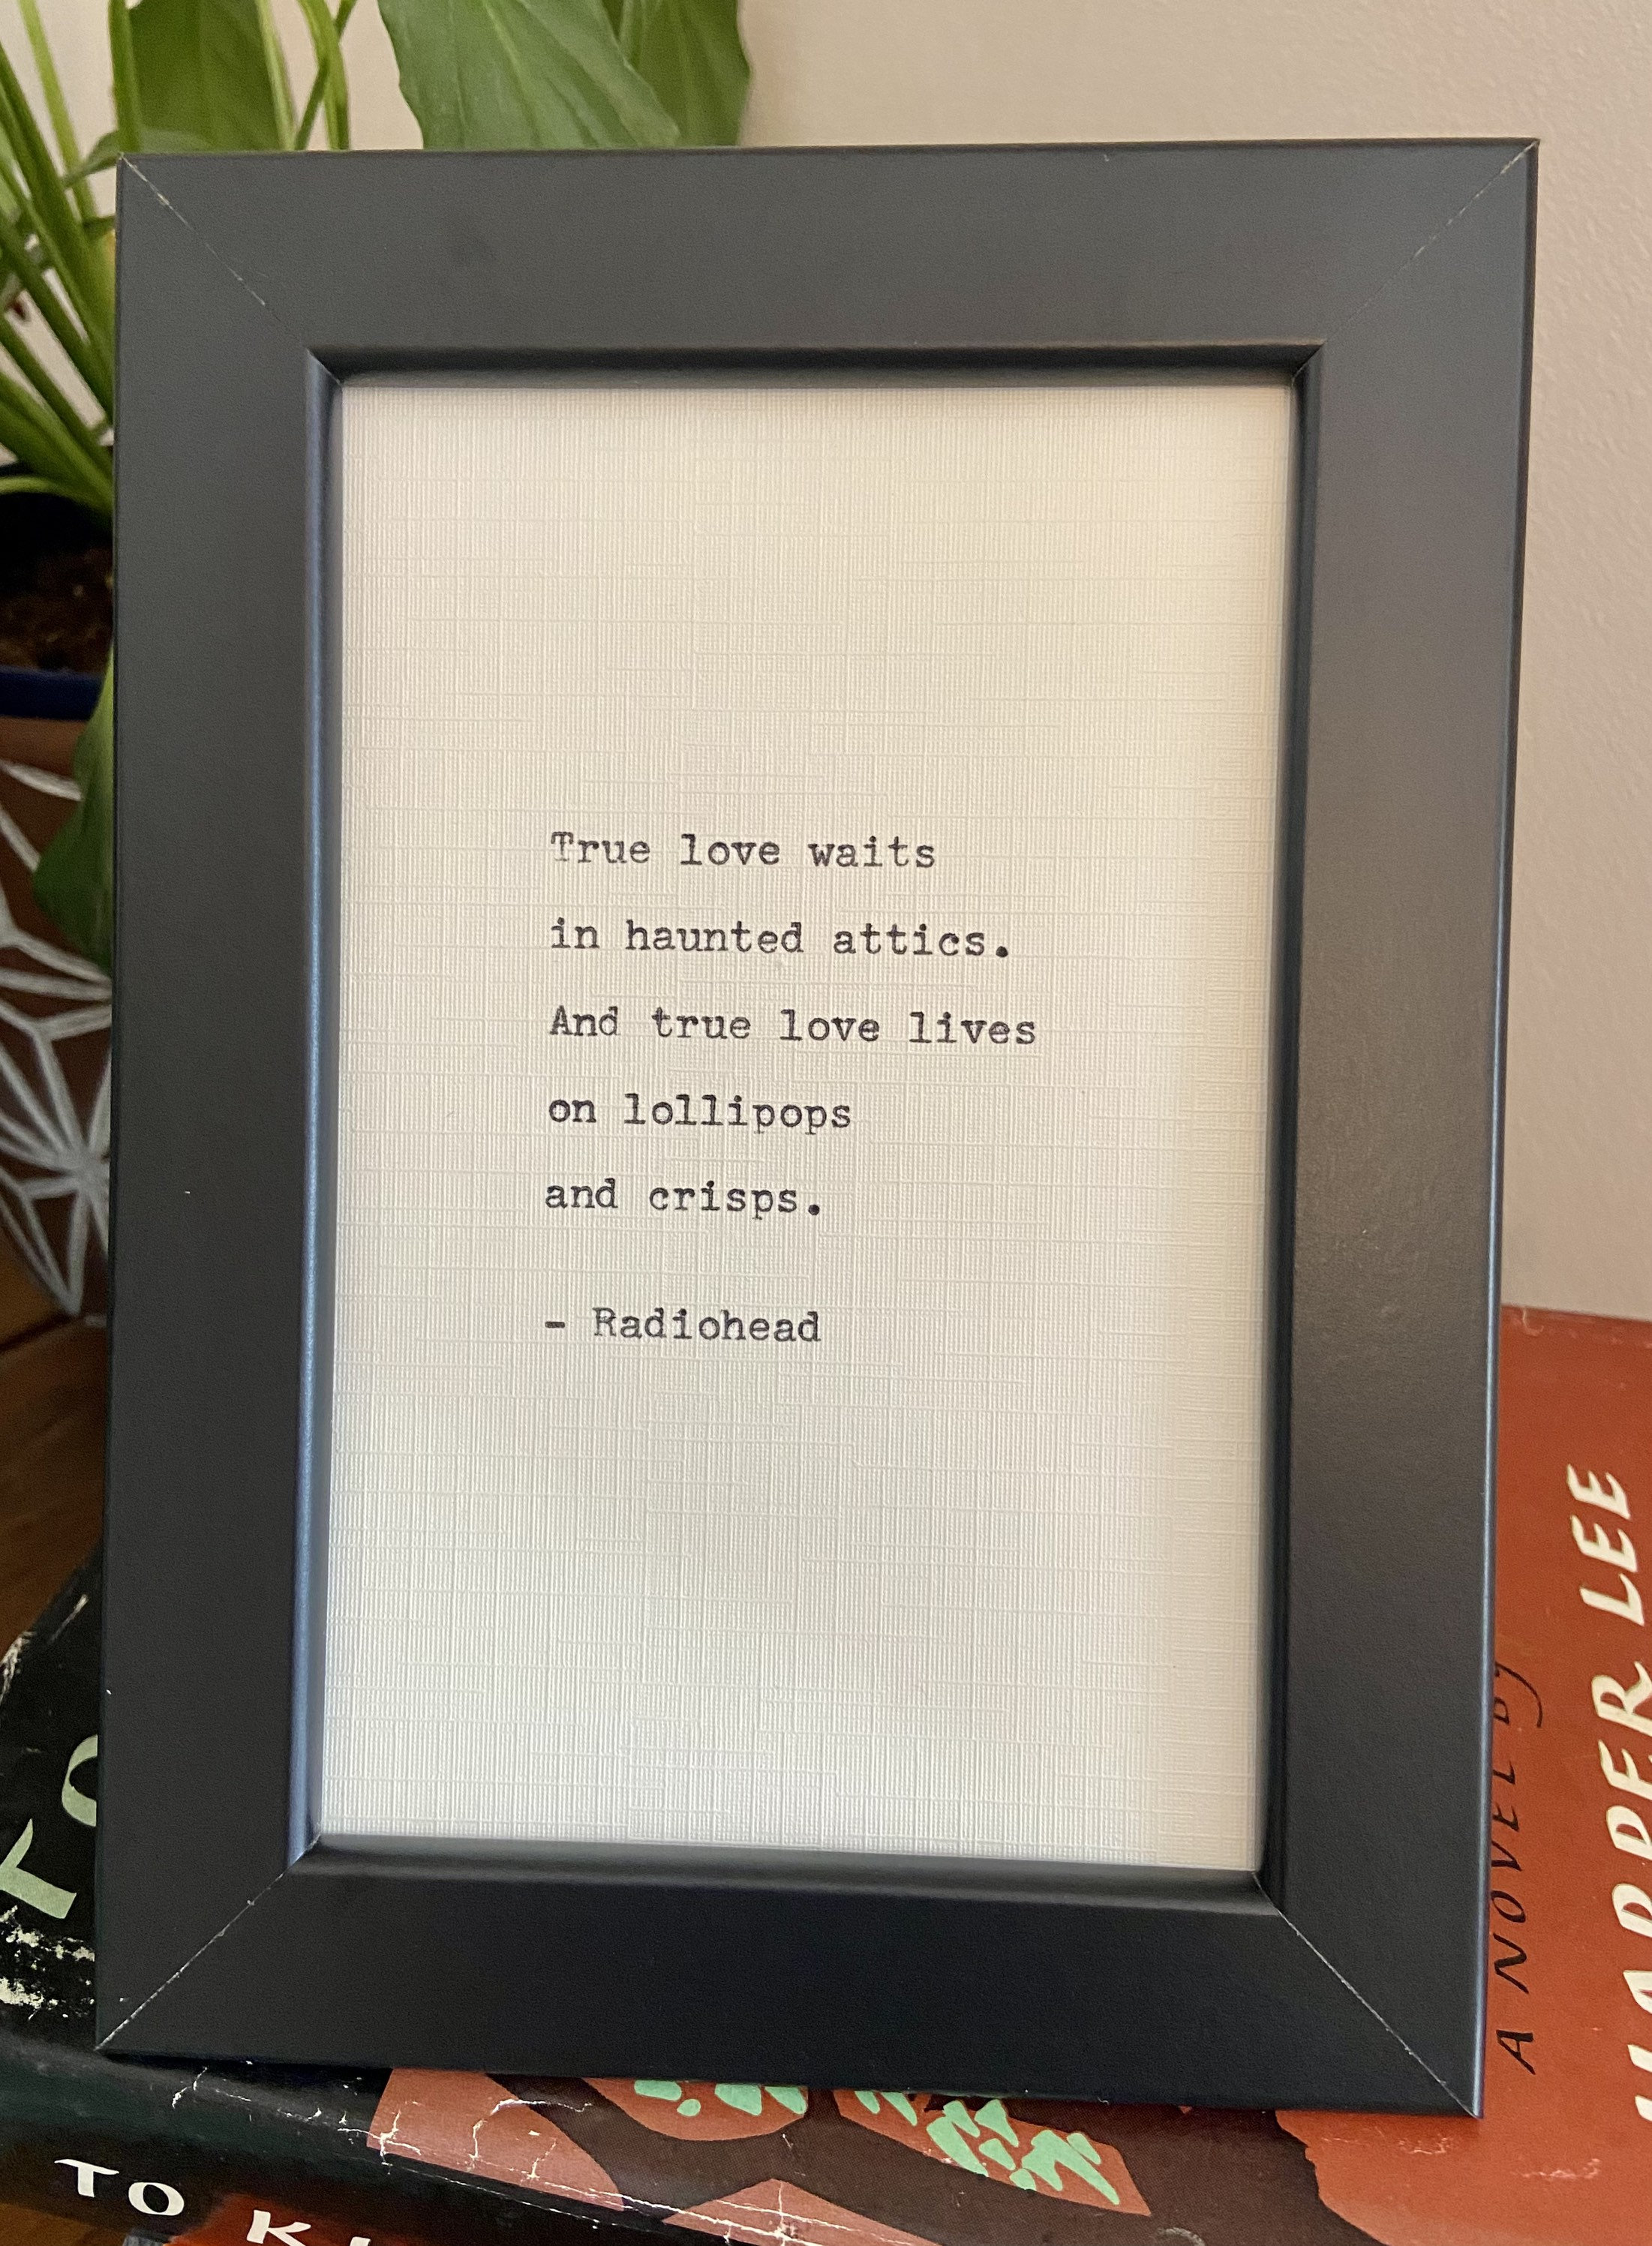 Radiohead – True Love Waits Lyrics